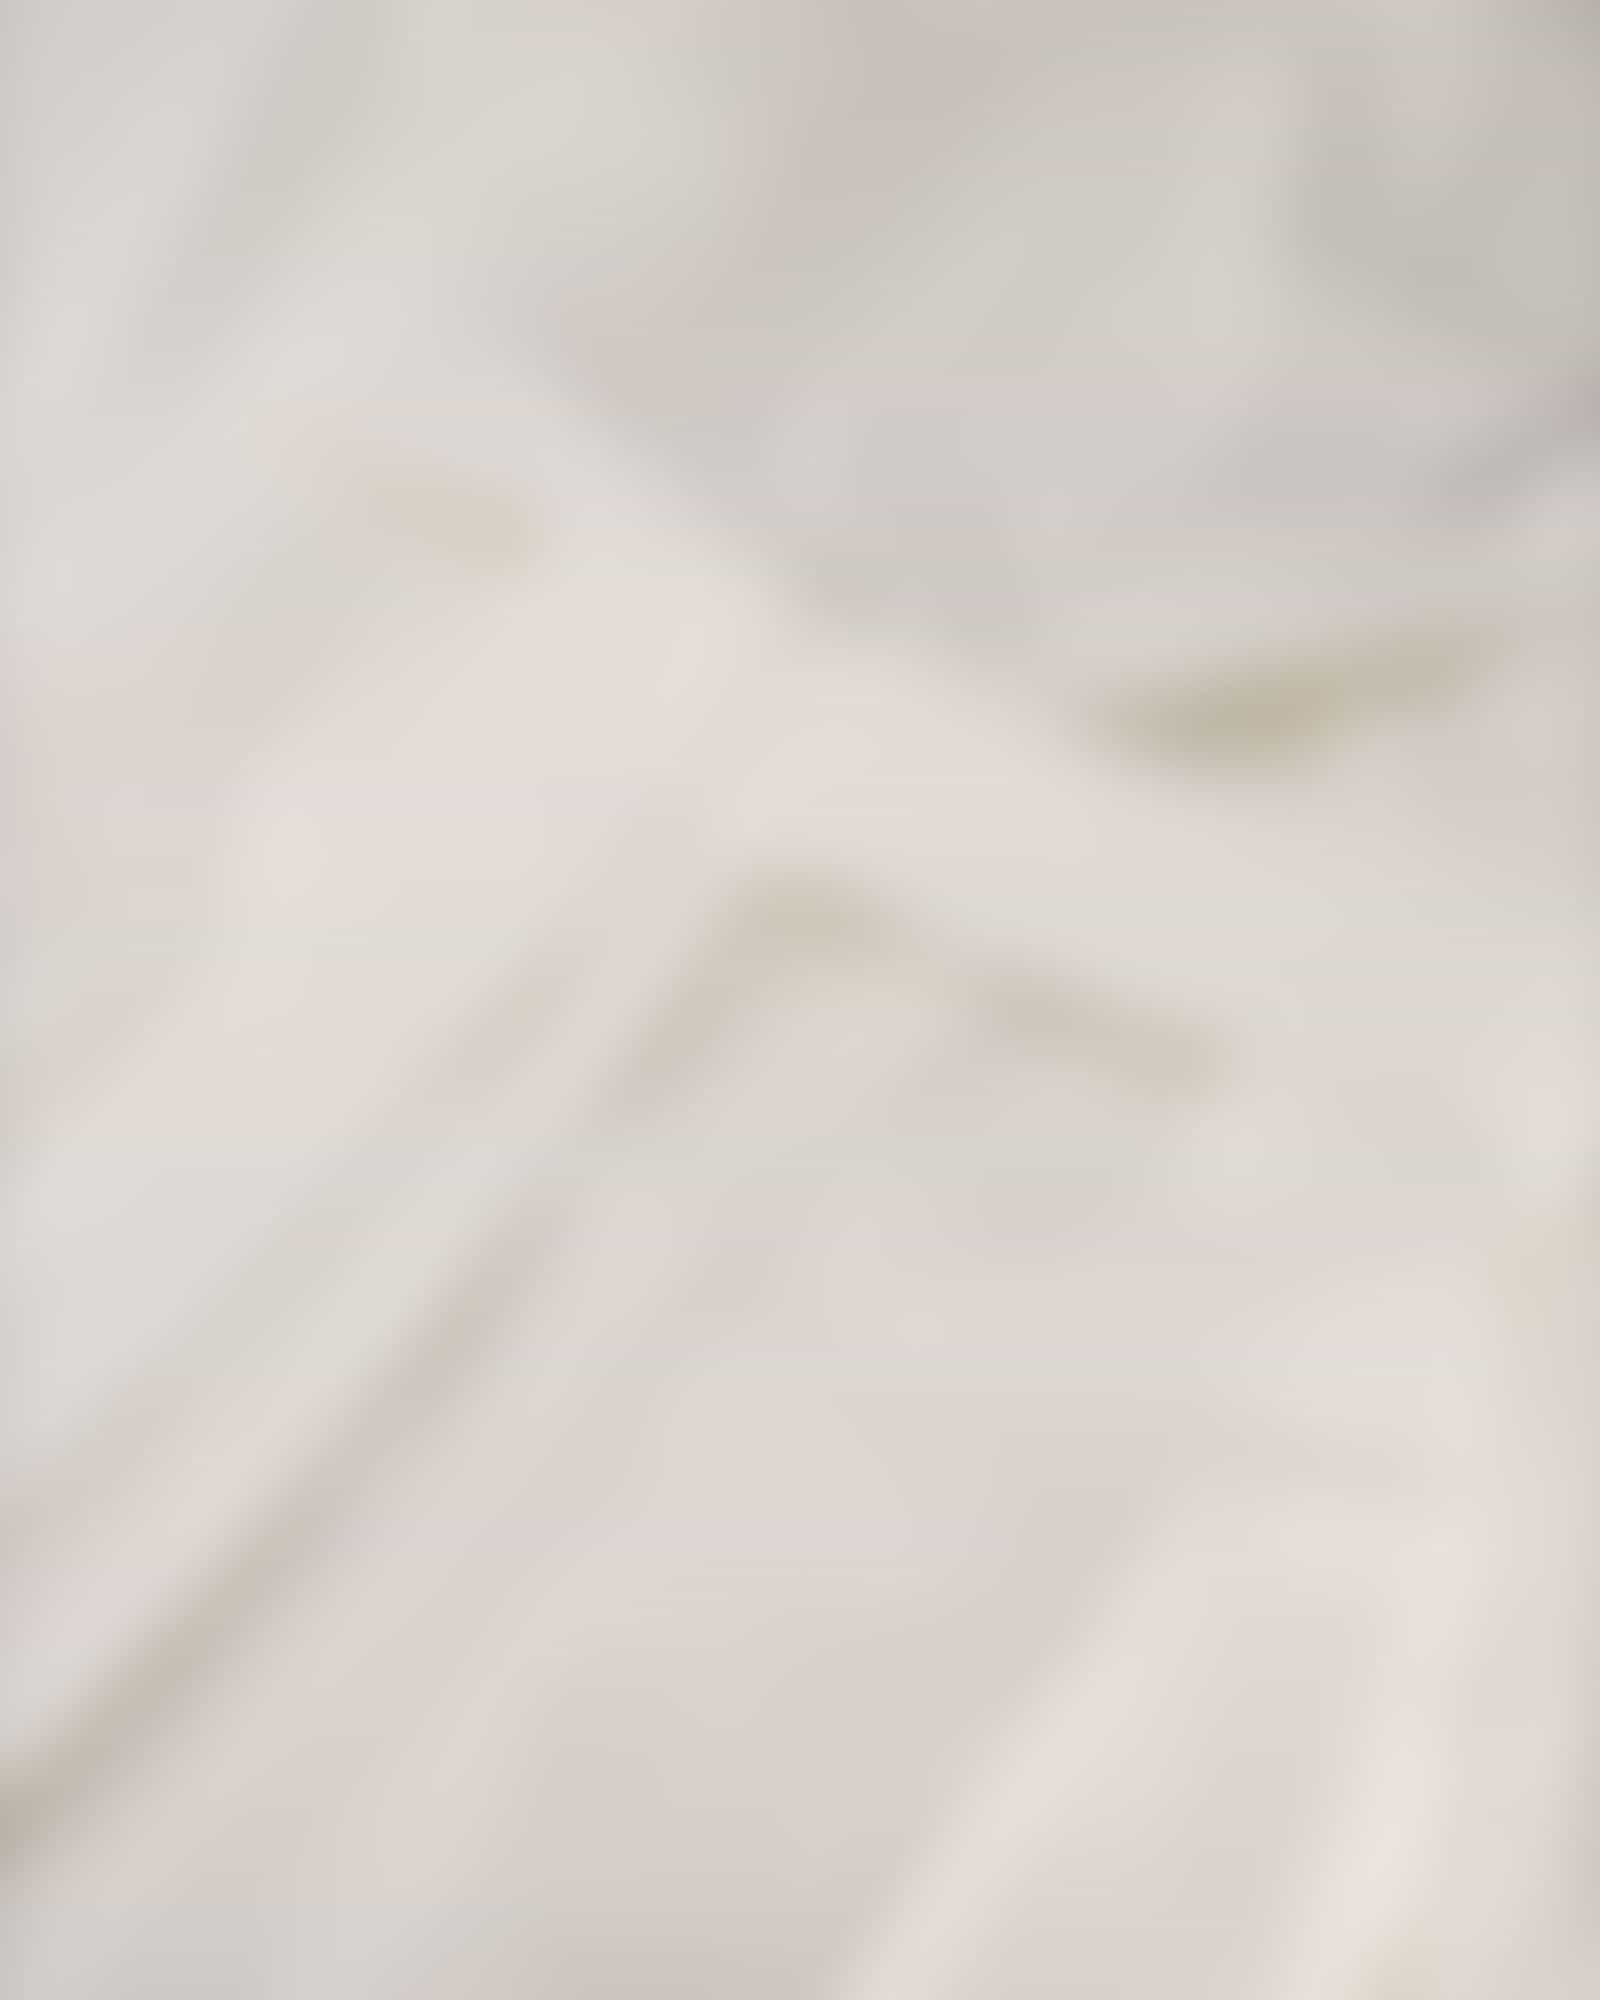 JOOP Herren Bademantel Kimono Pique 1656 - Farbe: Weiß - 600 - S